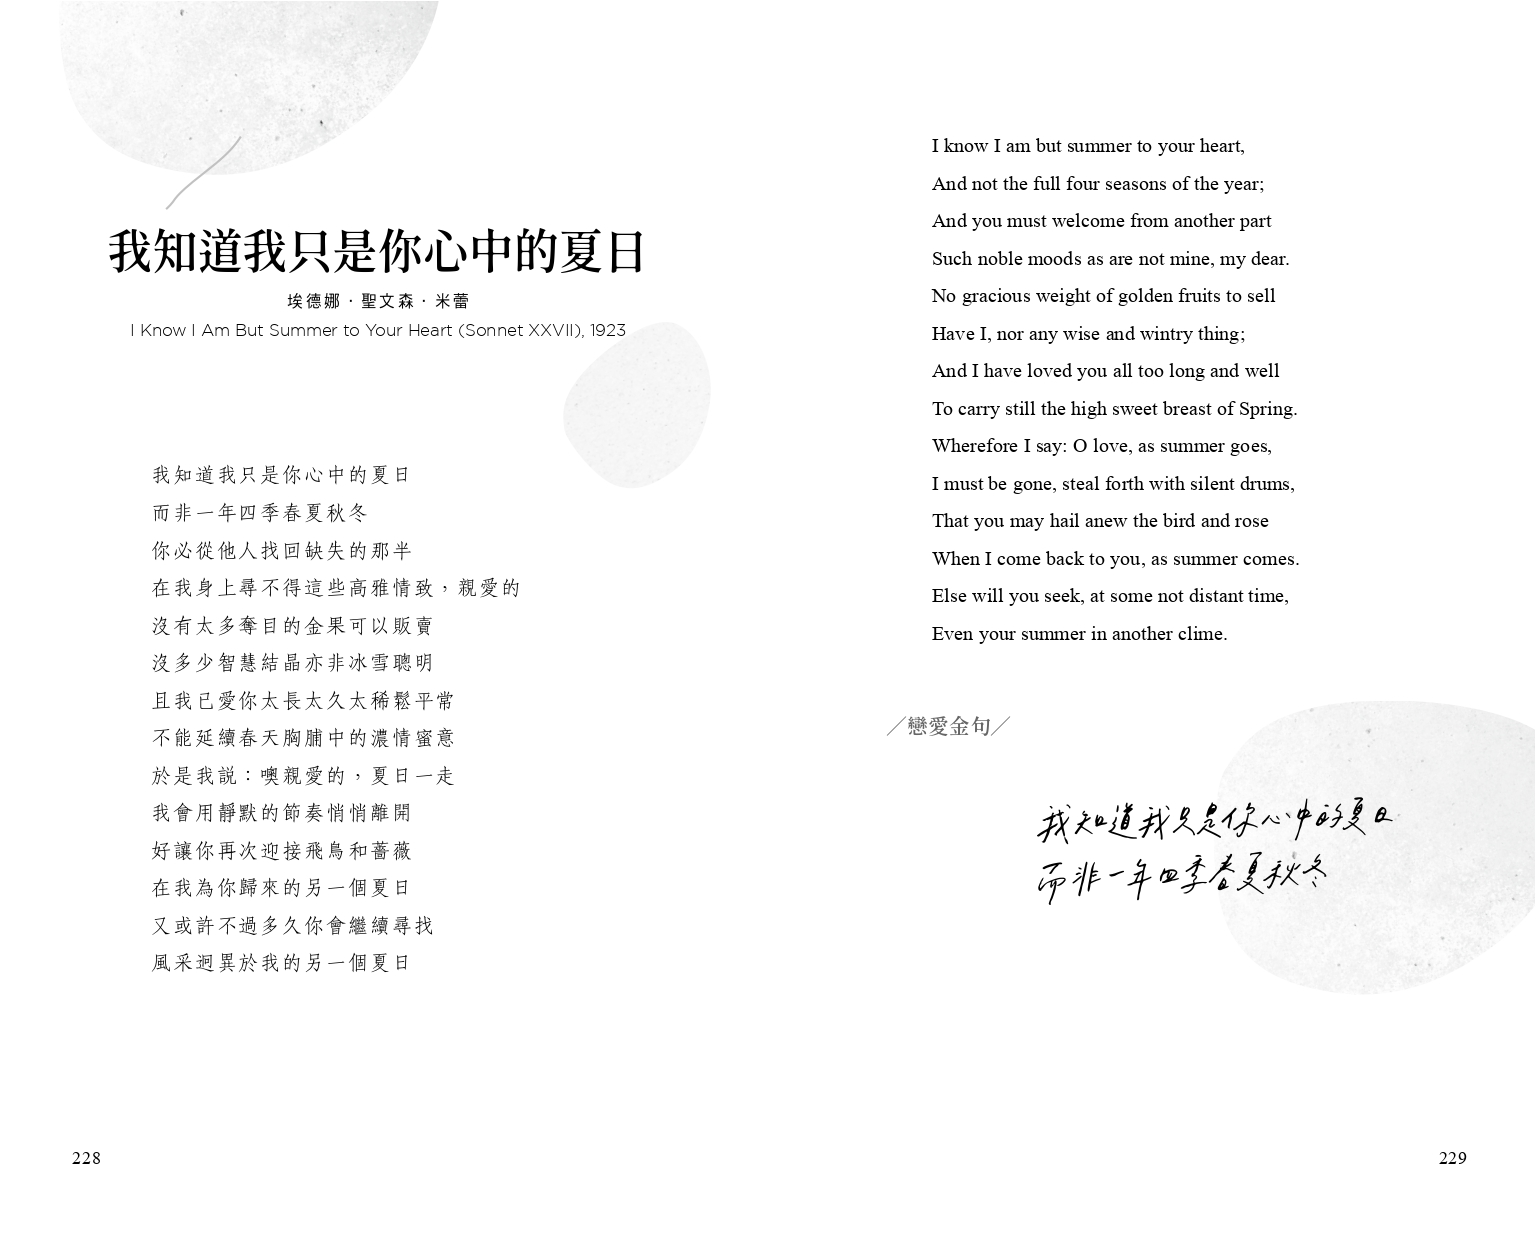 【內文手寫字照】圖片 漫遊者出版社 提供 手寫字 寫字練習 xiezilianxi